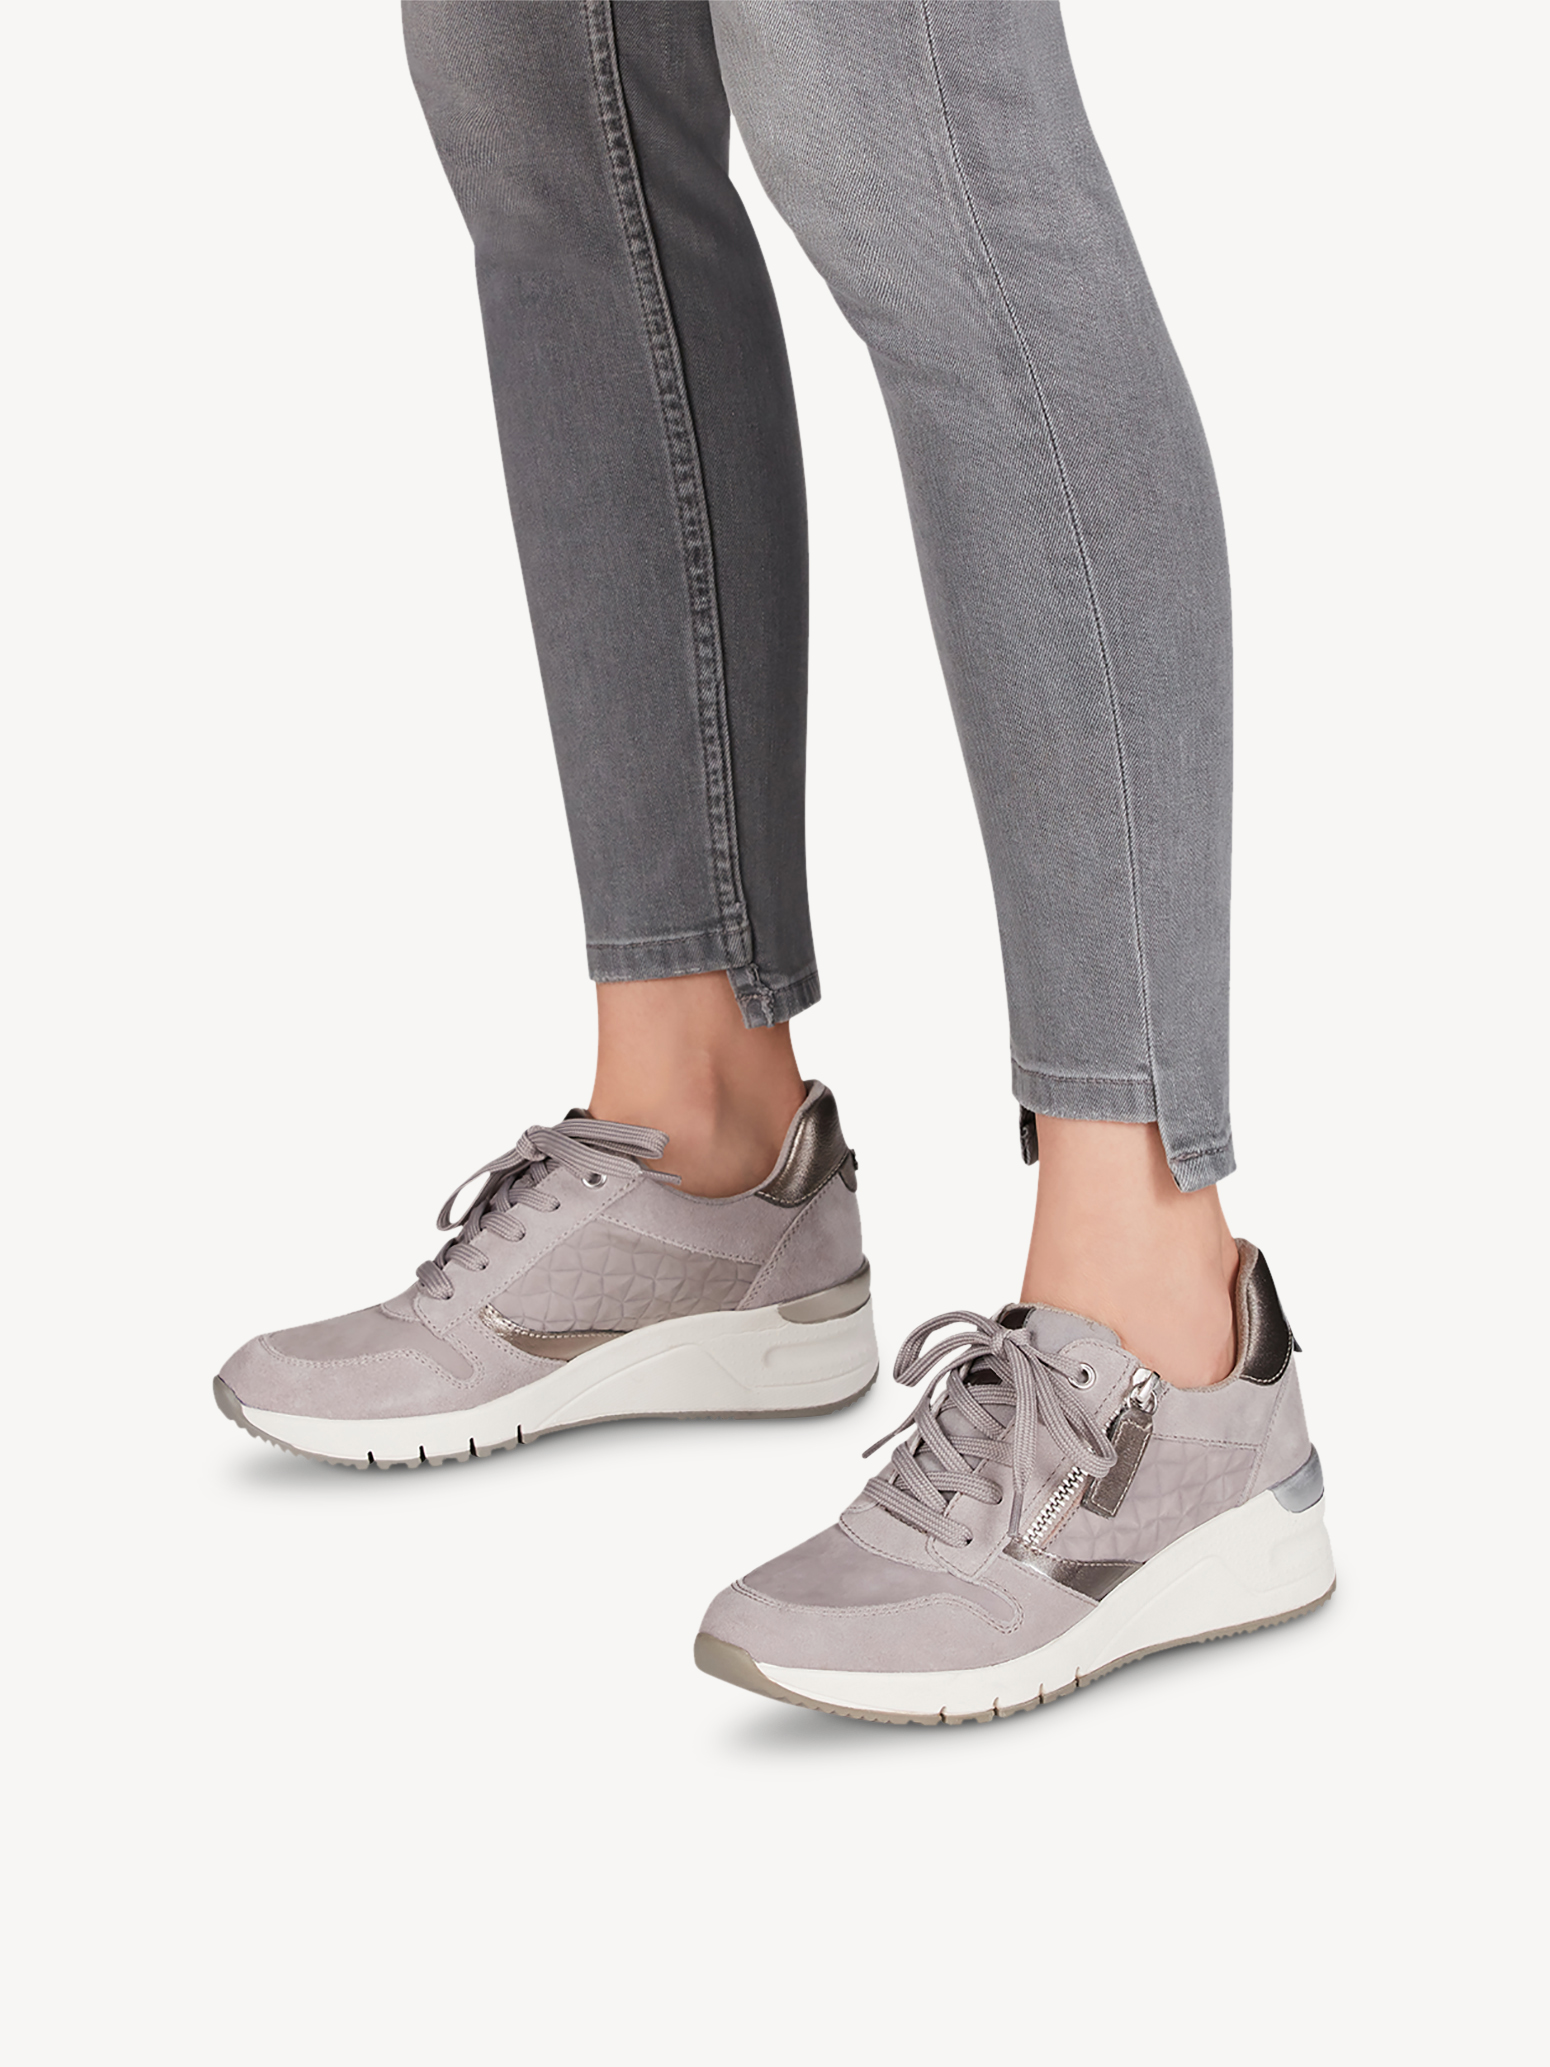 Ботинки на шнурках женские (серый) - изображение №1